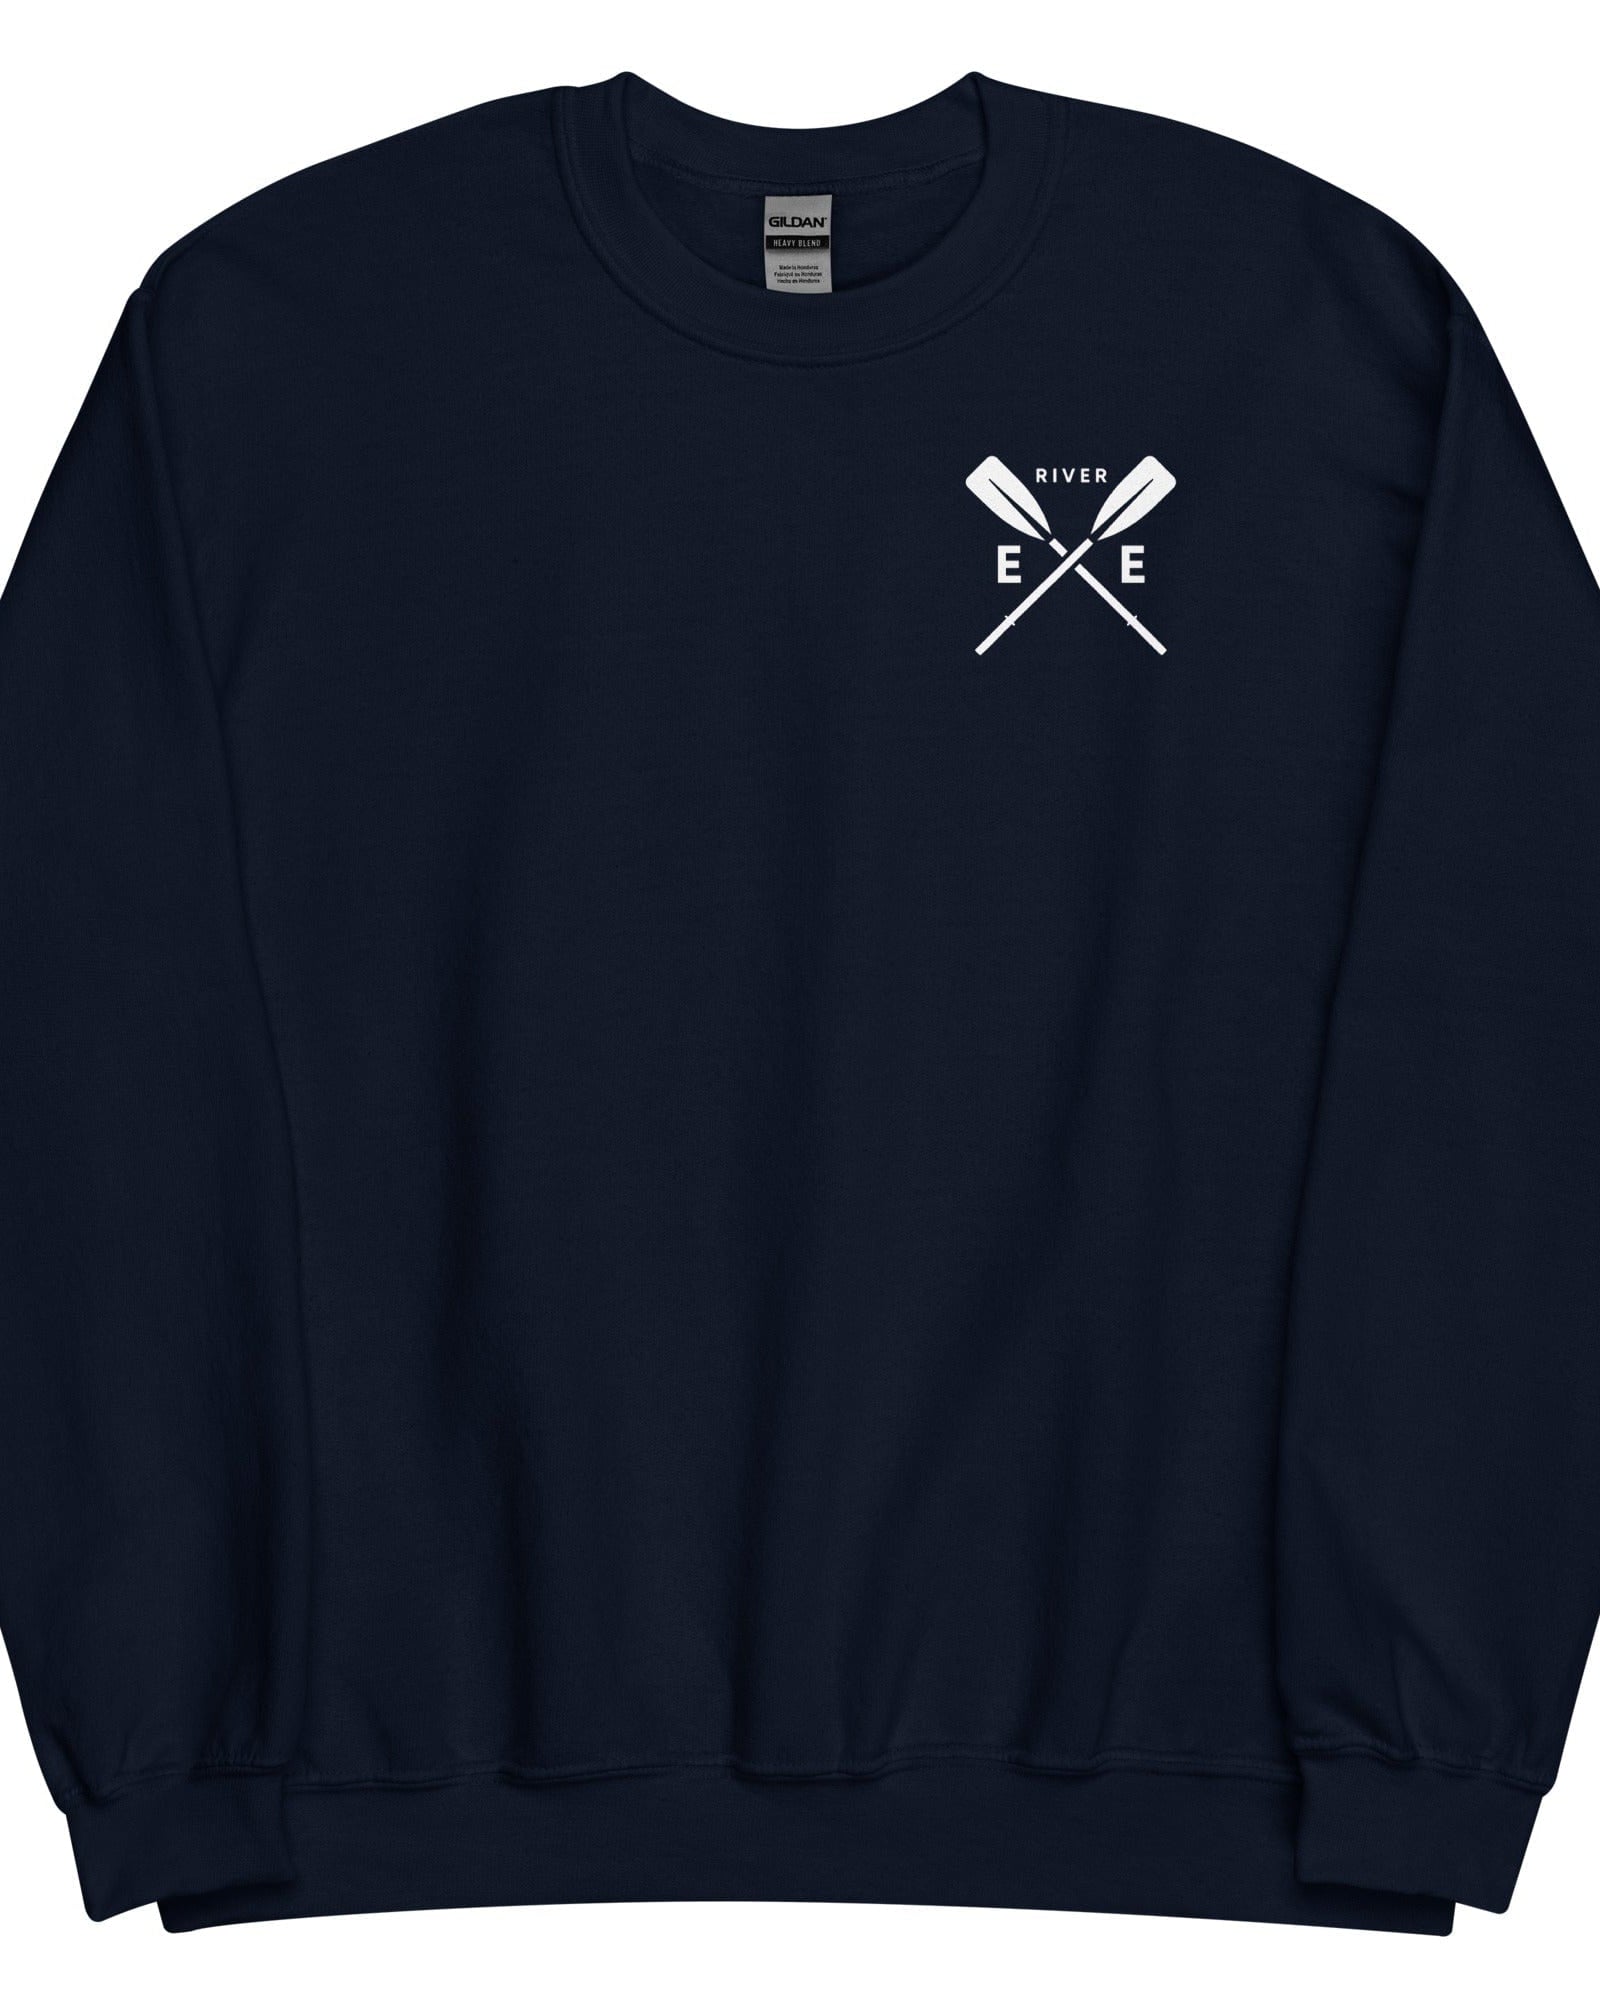 River Exe Sweatshirt Jumper | Exeter Gift Shop Navy / S Sweatshirt Jolly & Goode